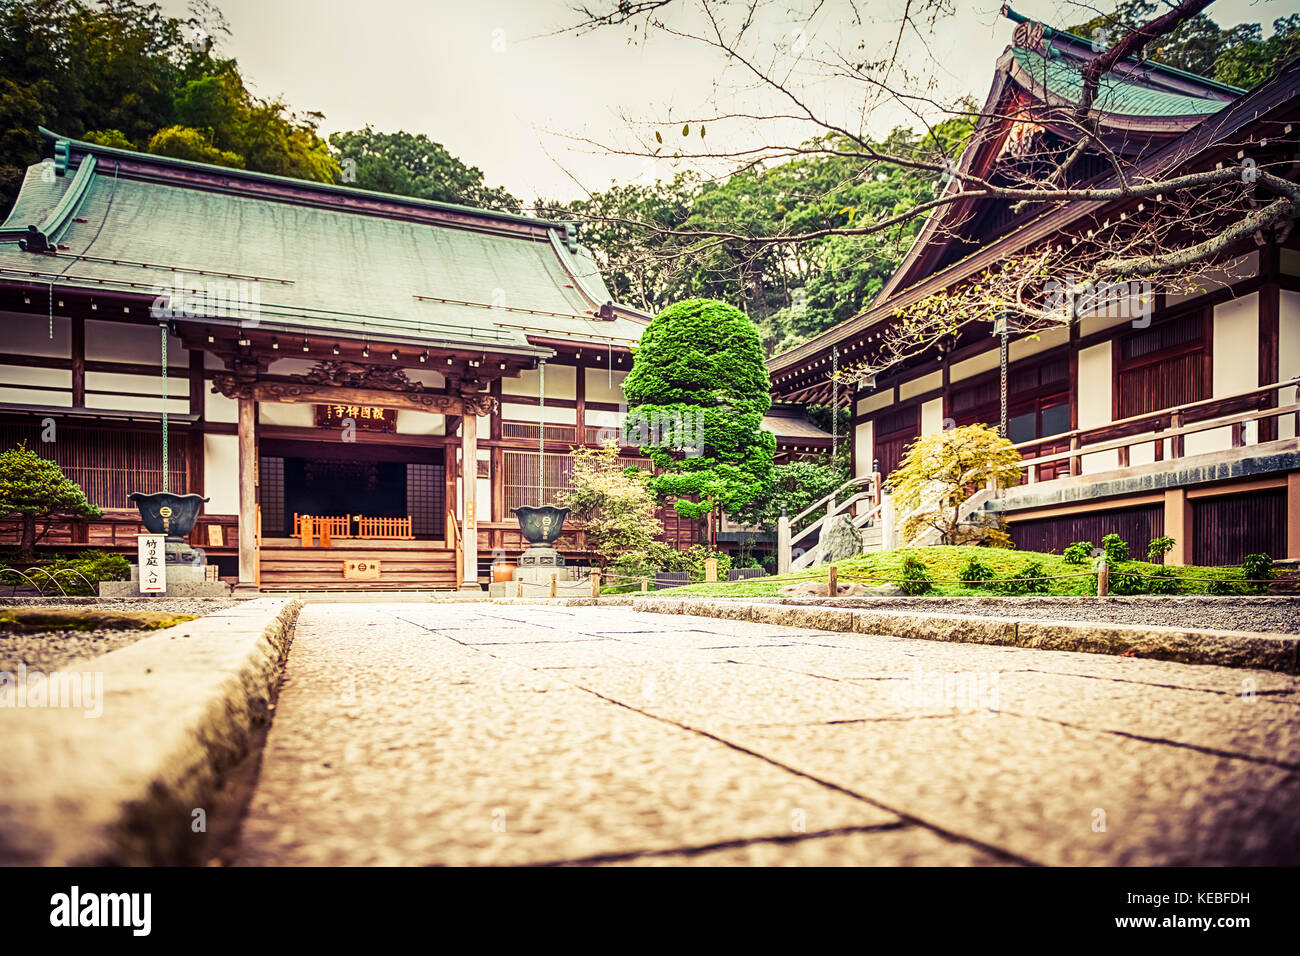 Hōkoku-ji es un antiguo templo en el Kenchō-ji de la escuela de la secta Rinzai del Budismo Zen ubicado en Kamakura, Japón. Famoso por su jardín de bambú. Foto de stock